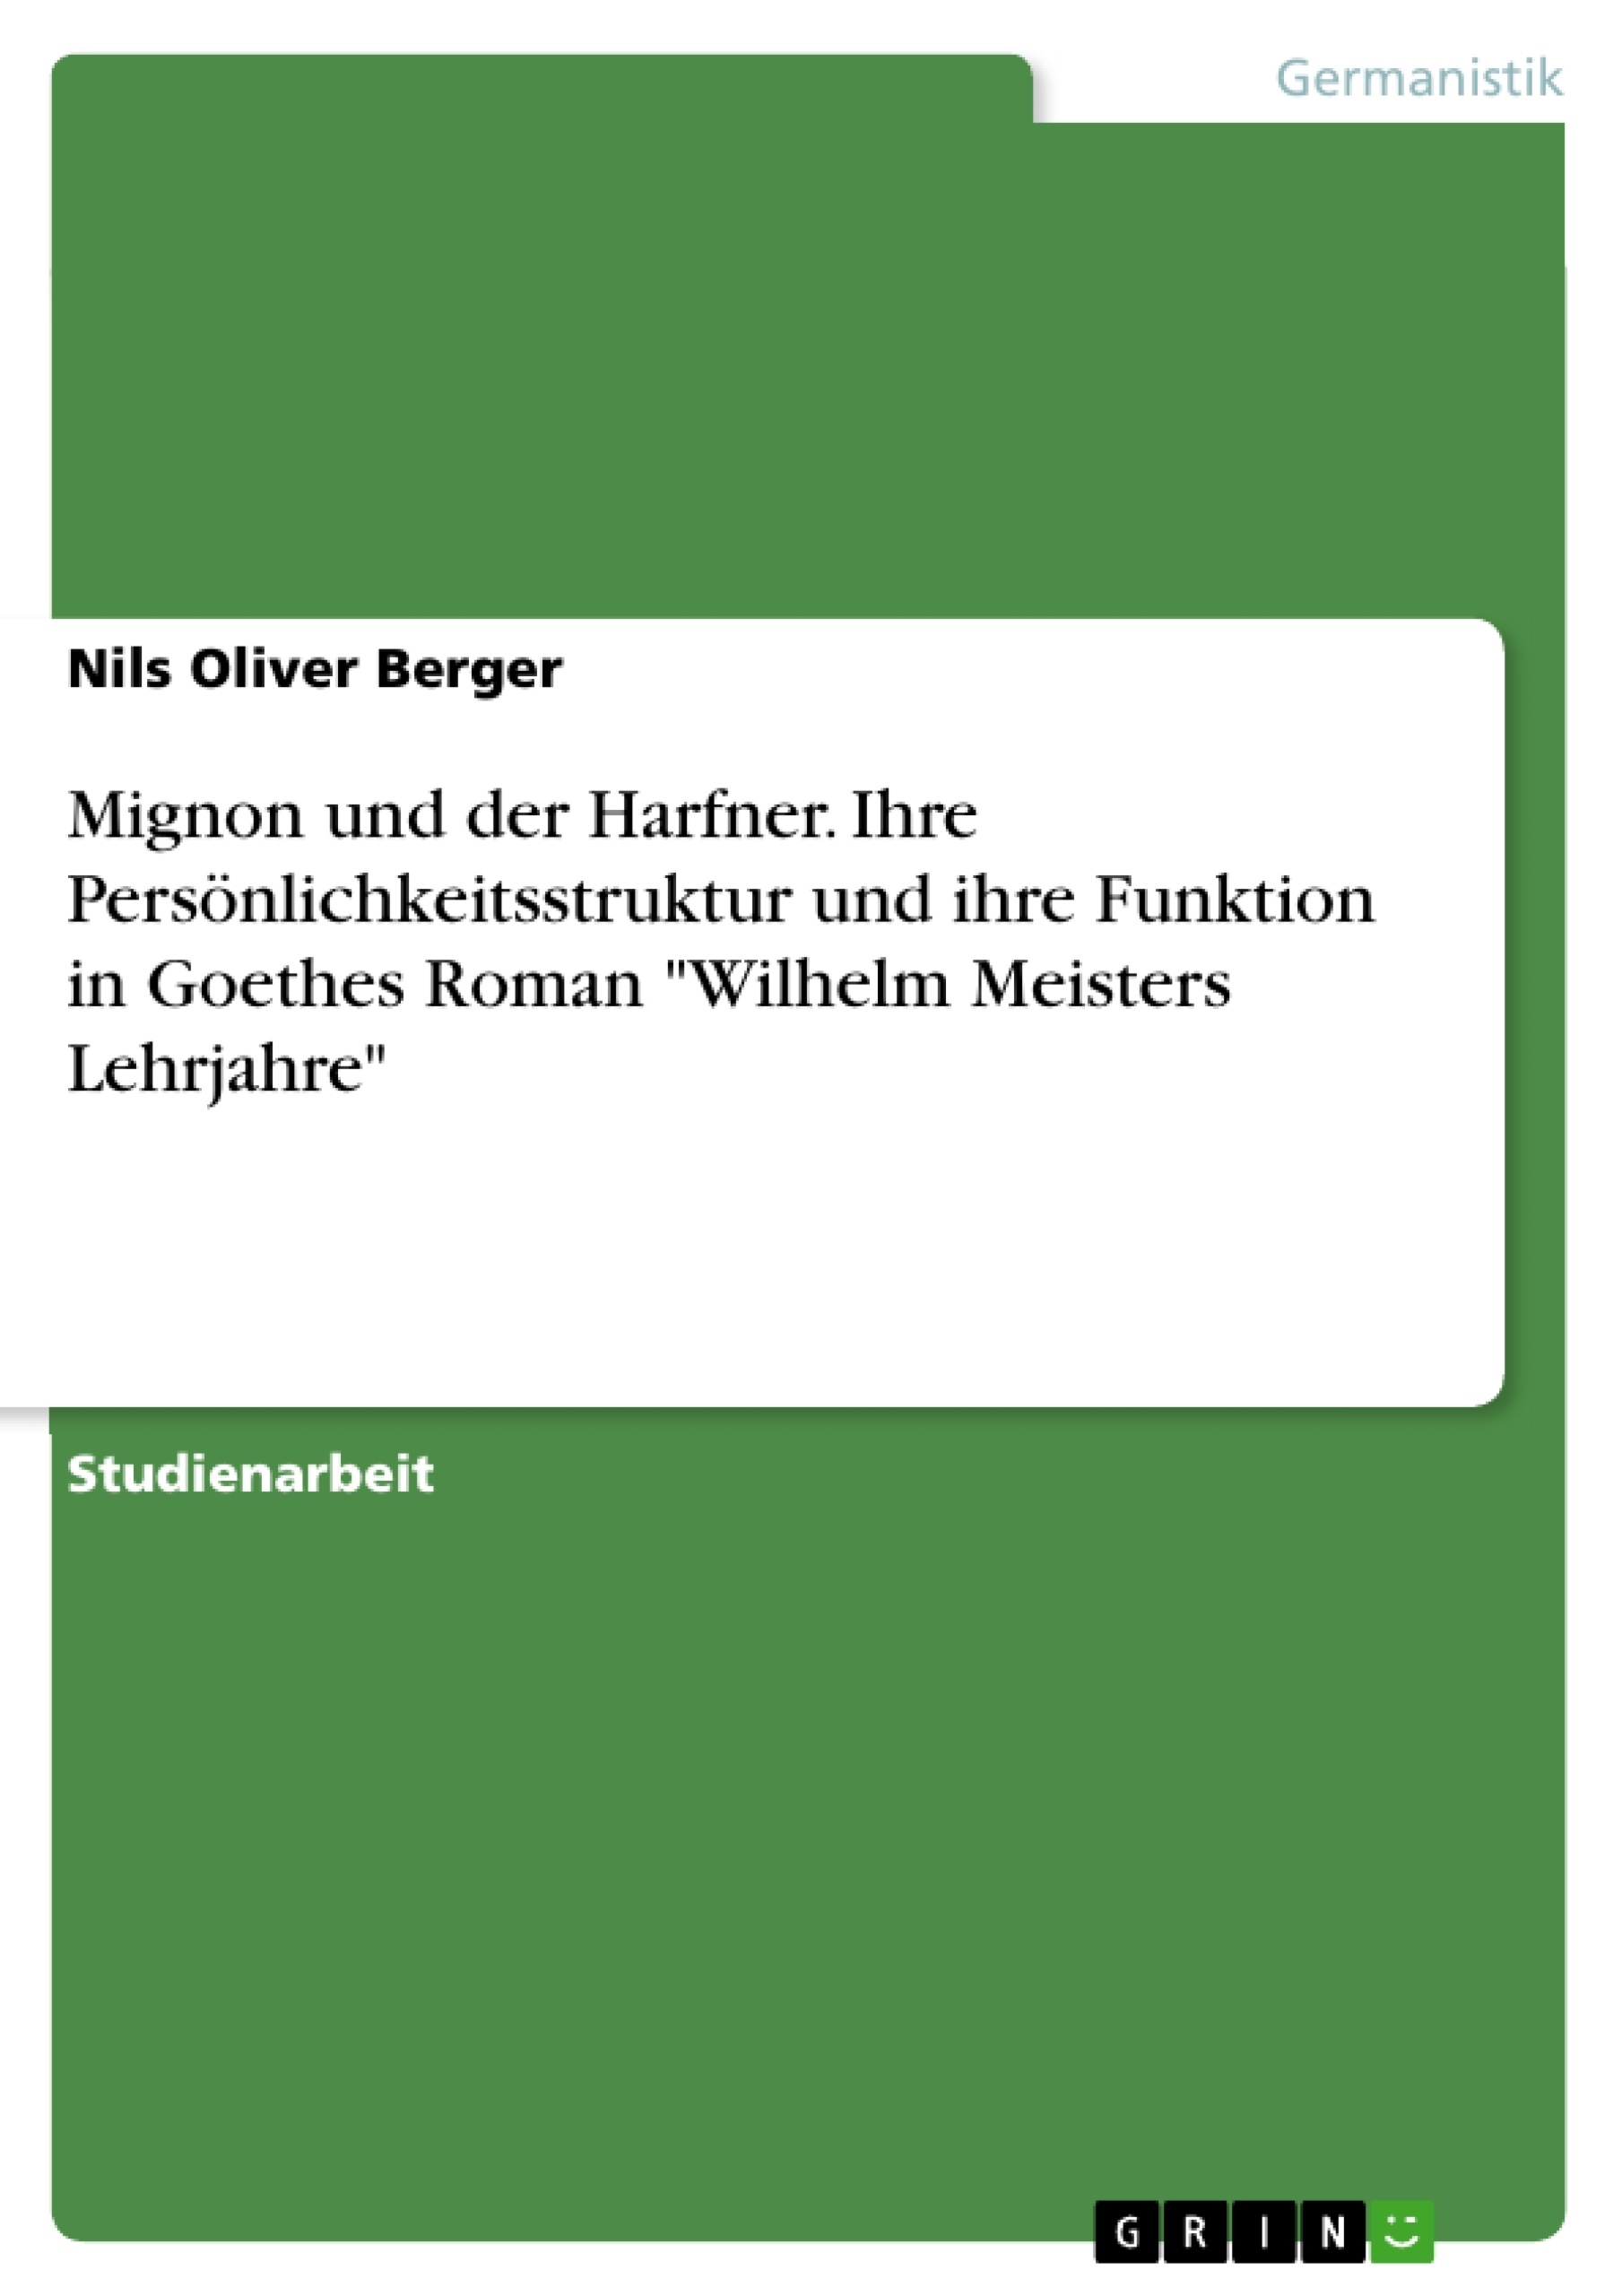 Title: Mignon und der Harfner. Ihre Persönlichkeitsstruktur und ihre Funktion in Goethes Roman "Wilhelm Meisters Lehrjahre"